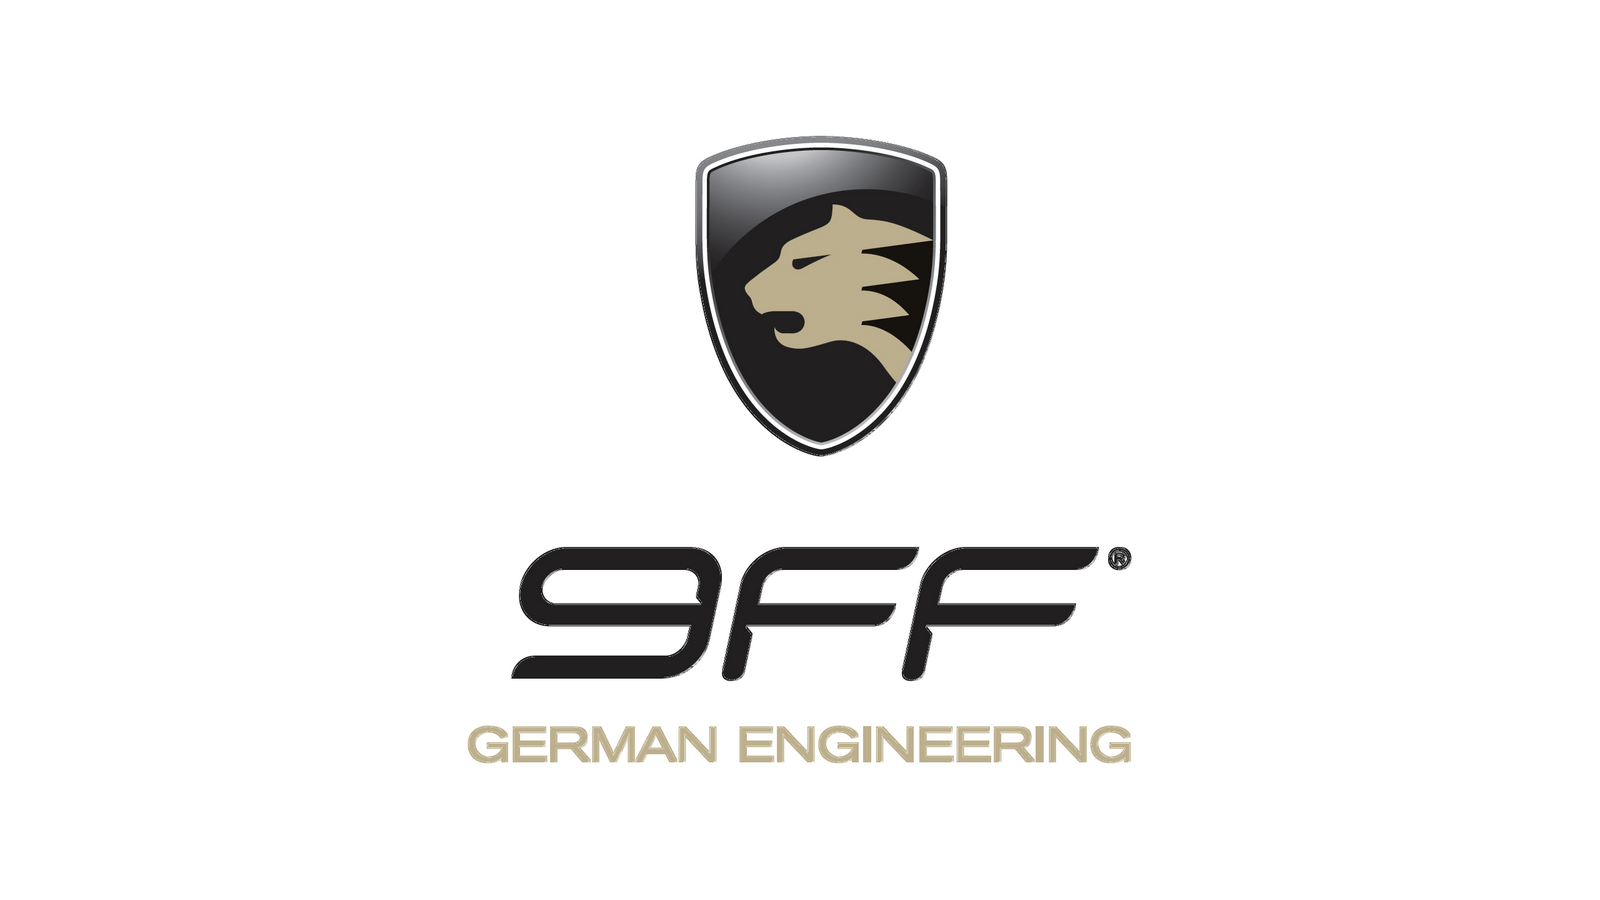 9ff logo